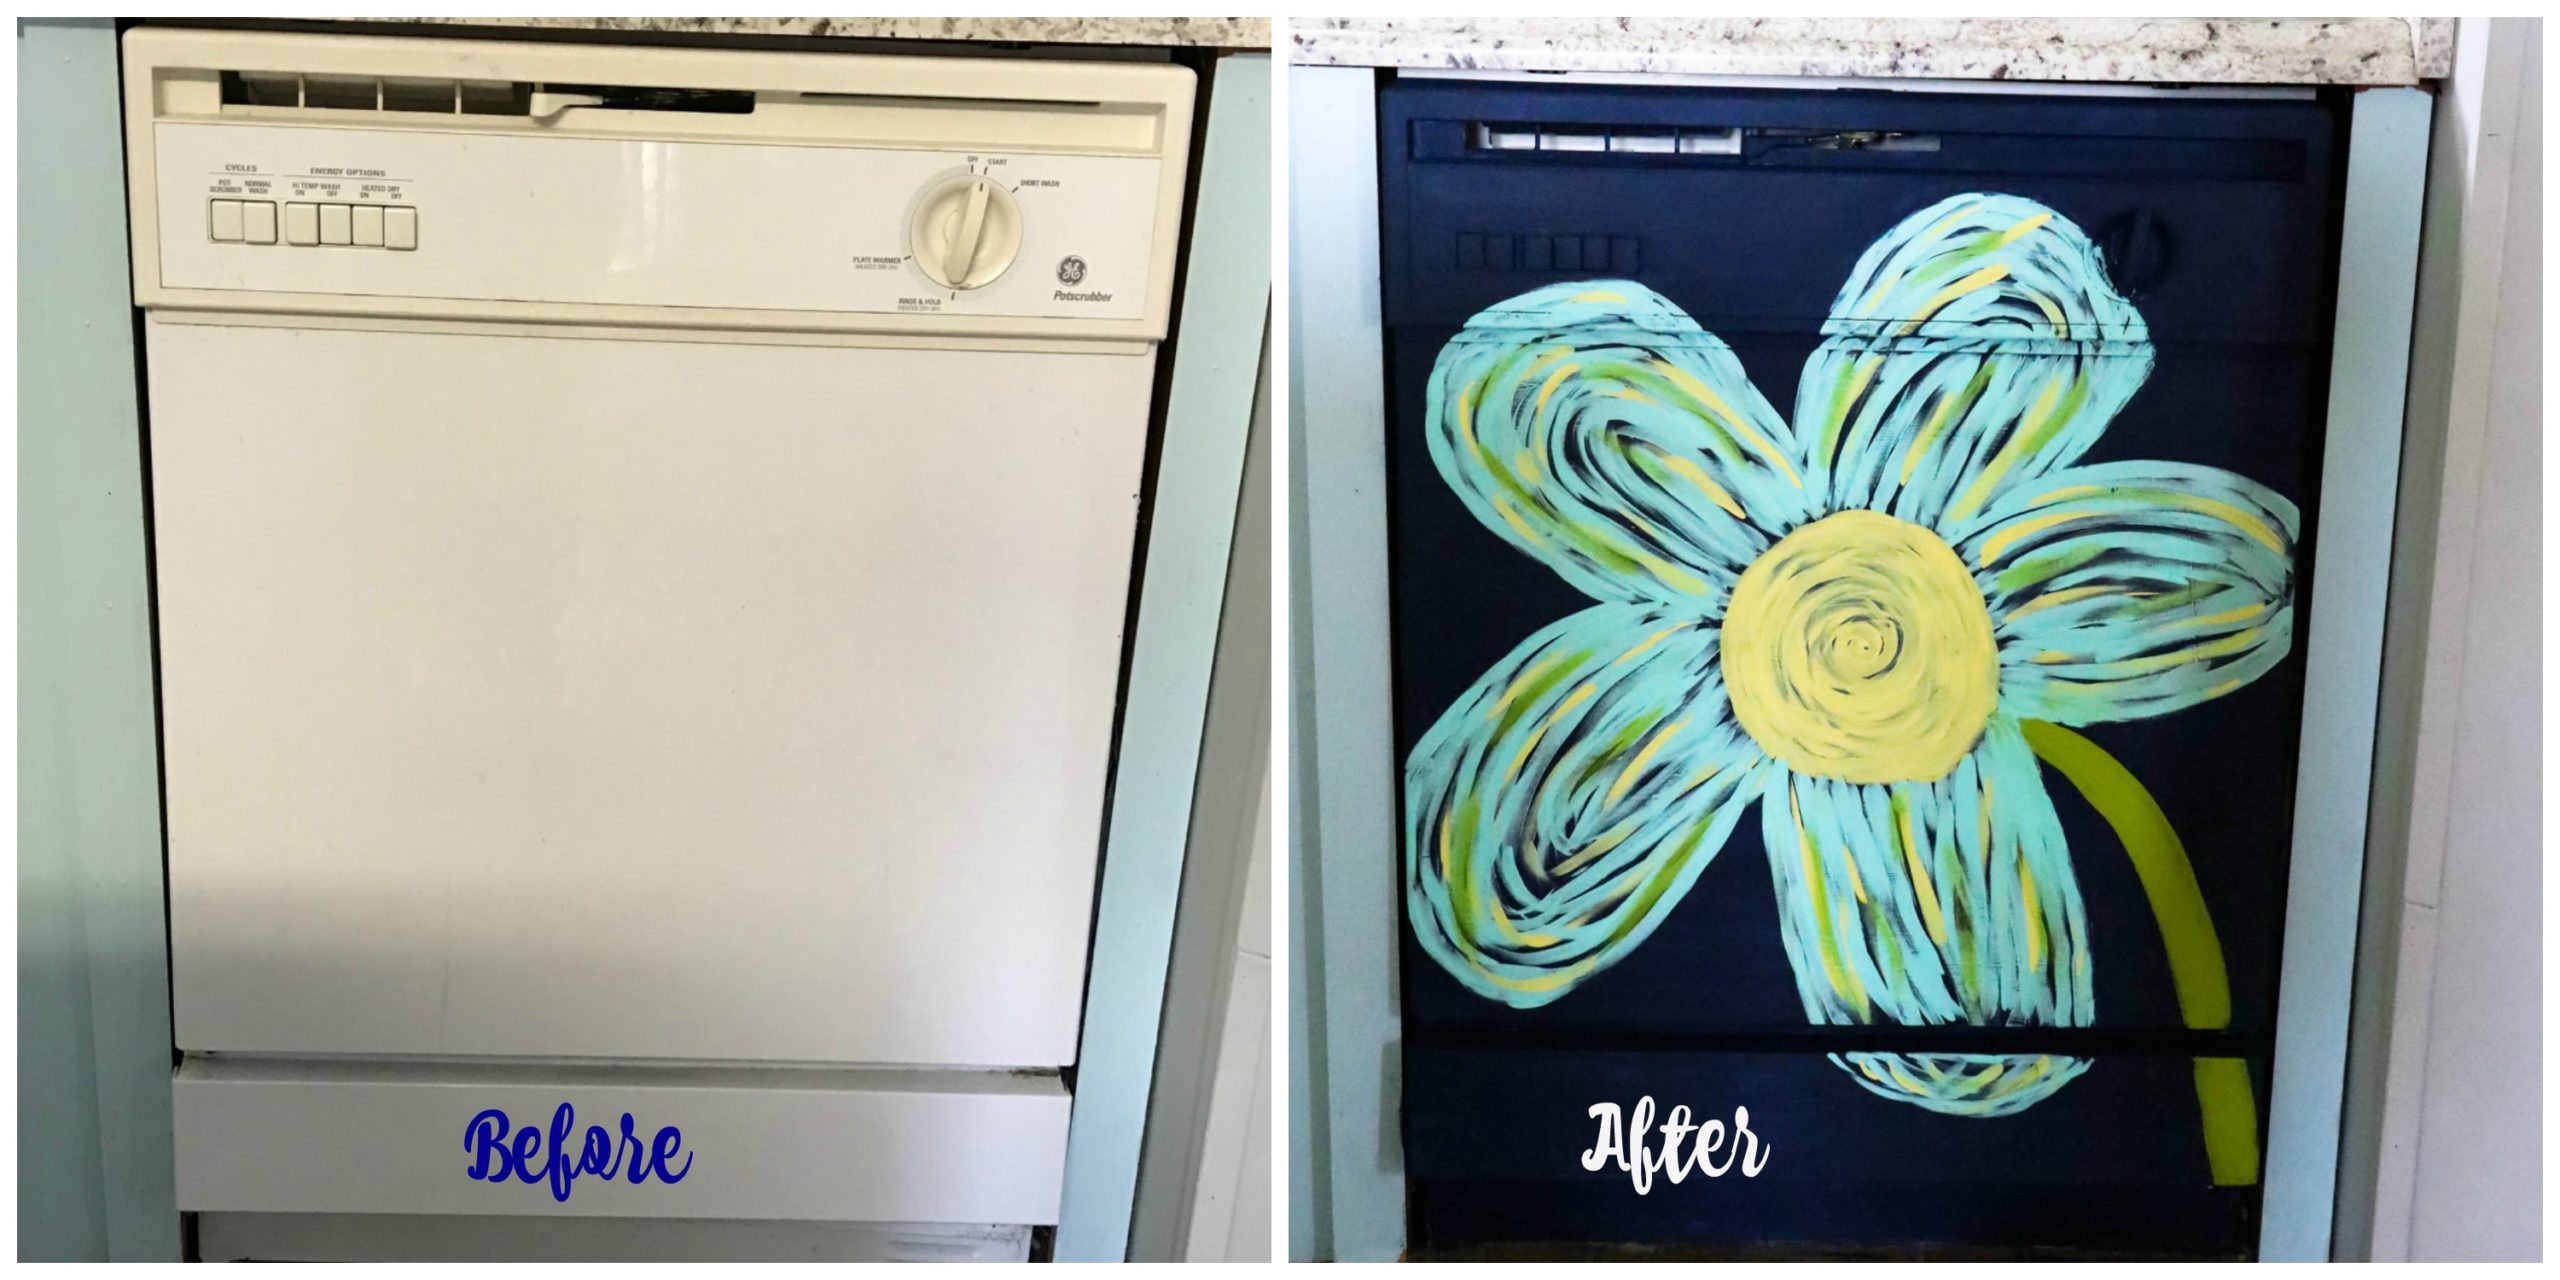 I Painted My Dishwasher